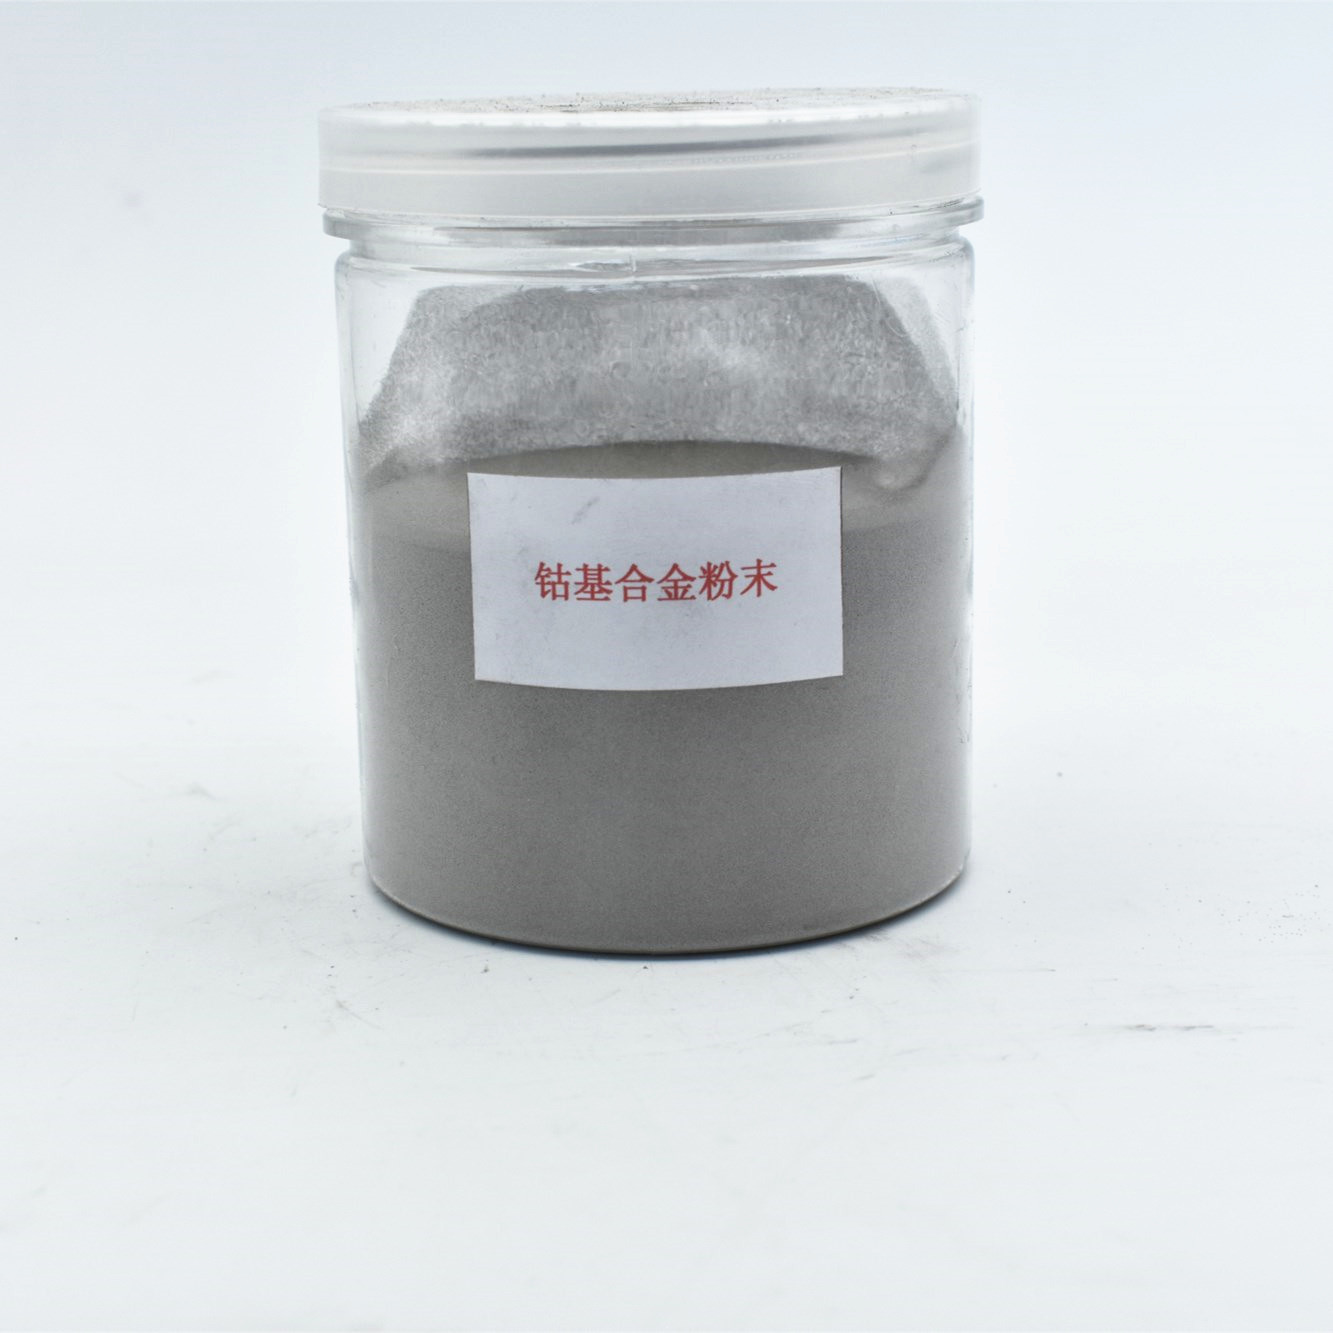 硬度65-70钴基合金粉末 喷焊喷涂粉末 合金粉末 热喷涂粉末 钴粉|ms